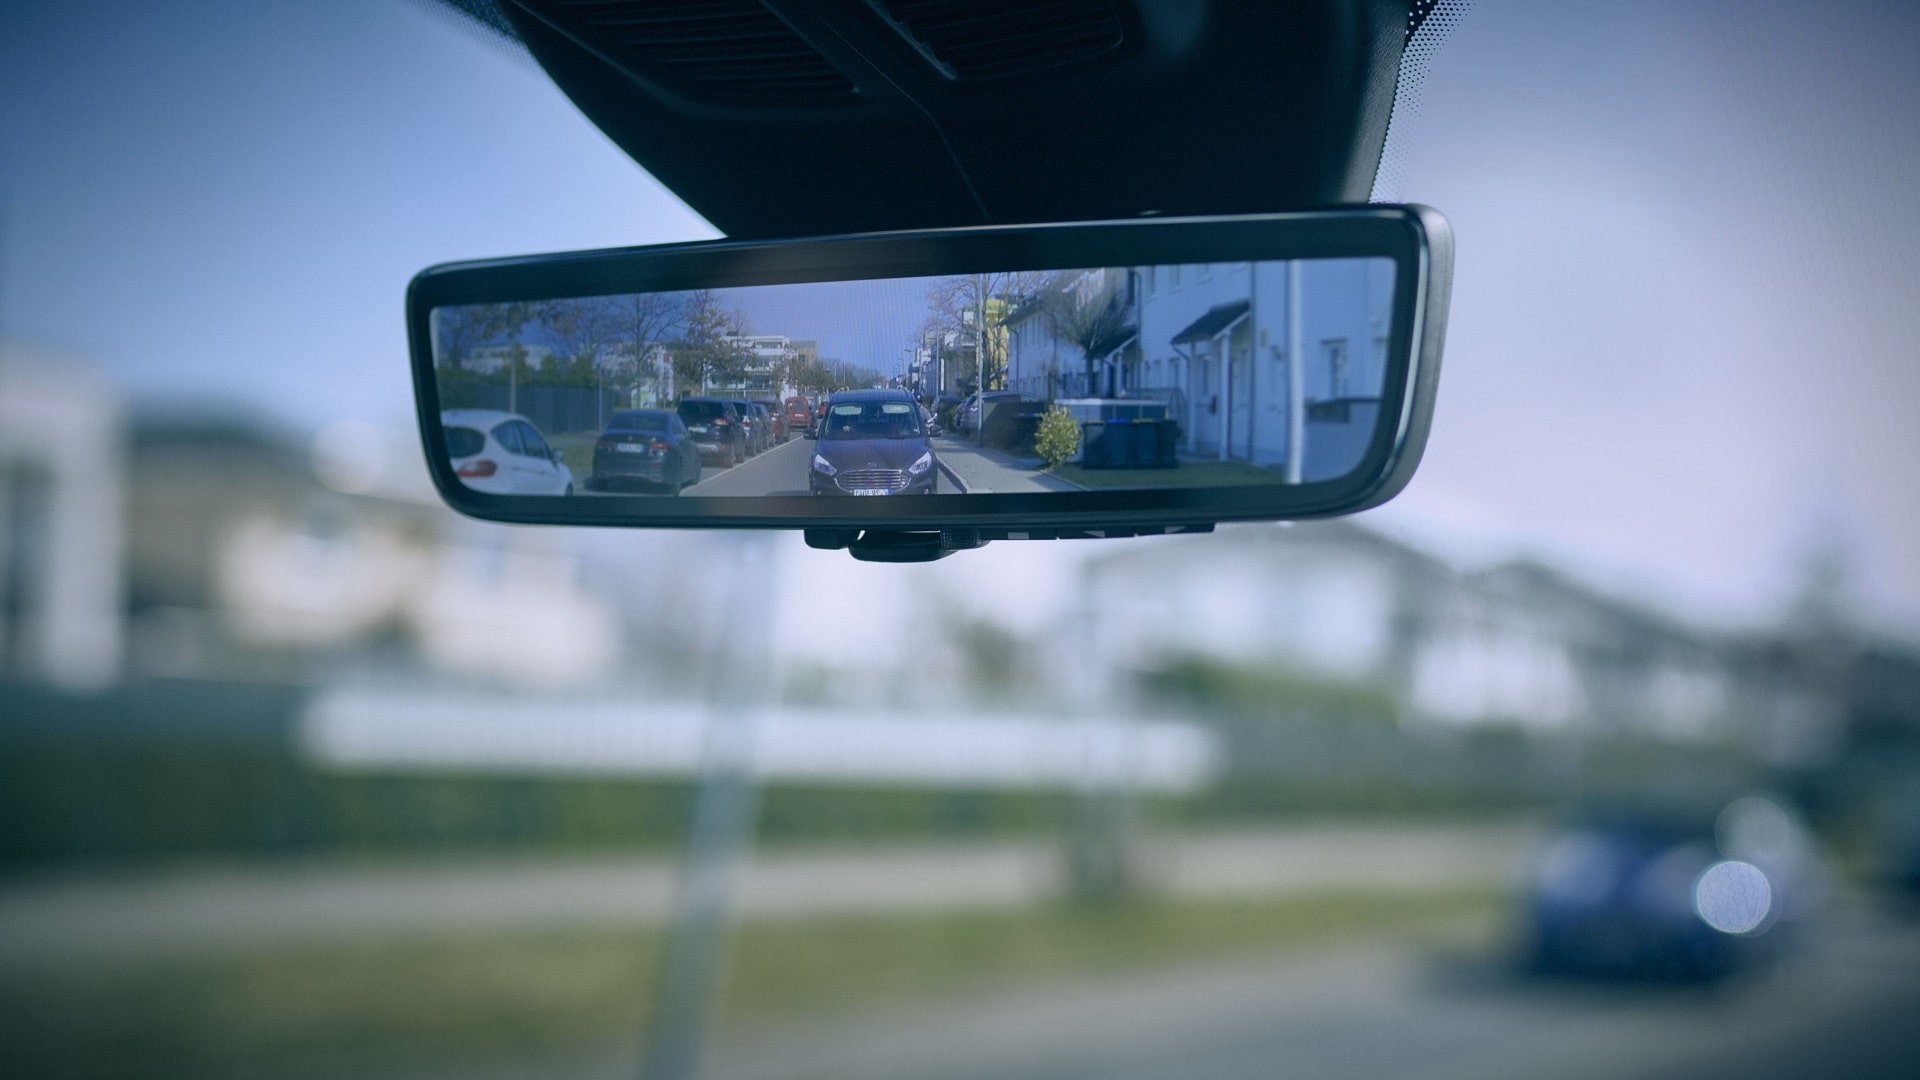 Smart Mirrors Help Van Drivers Spot Pedestrians